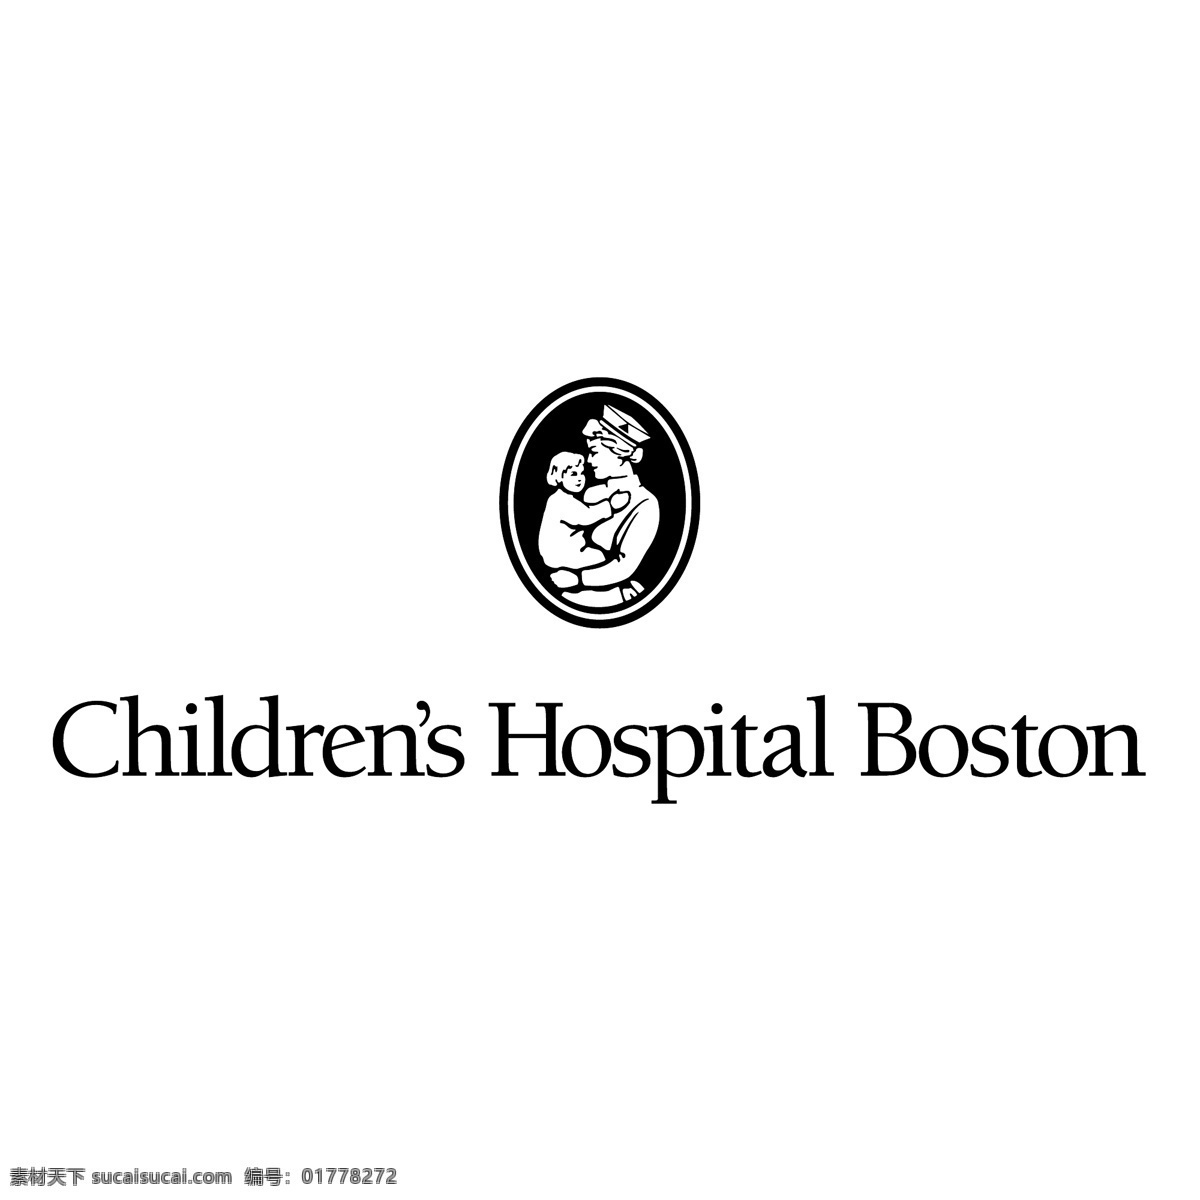 标志 儿童 儿童医院 医院 医院波士顿 波士顿 标识向量 向量儿童医院 标识 矢量 矢量图 建筑家居